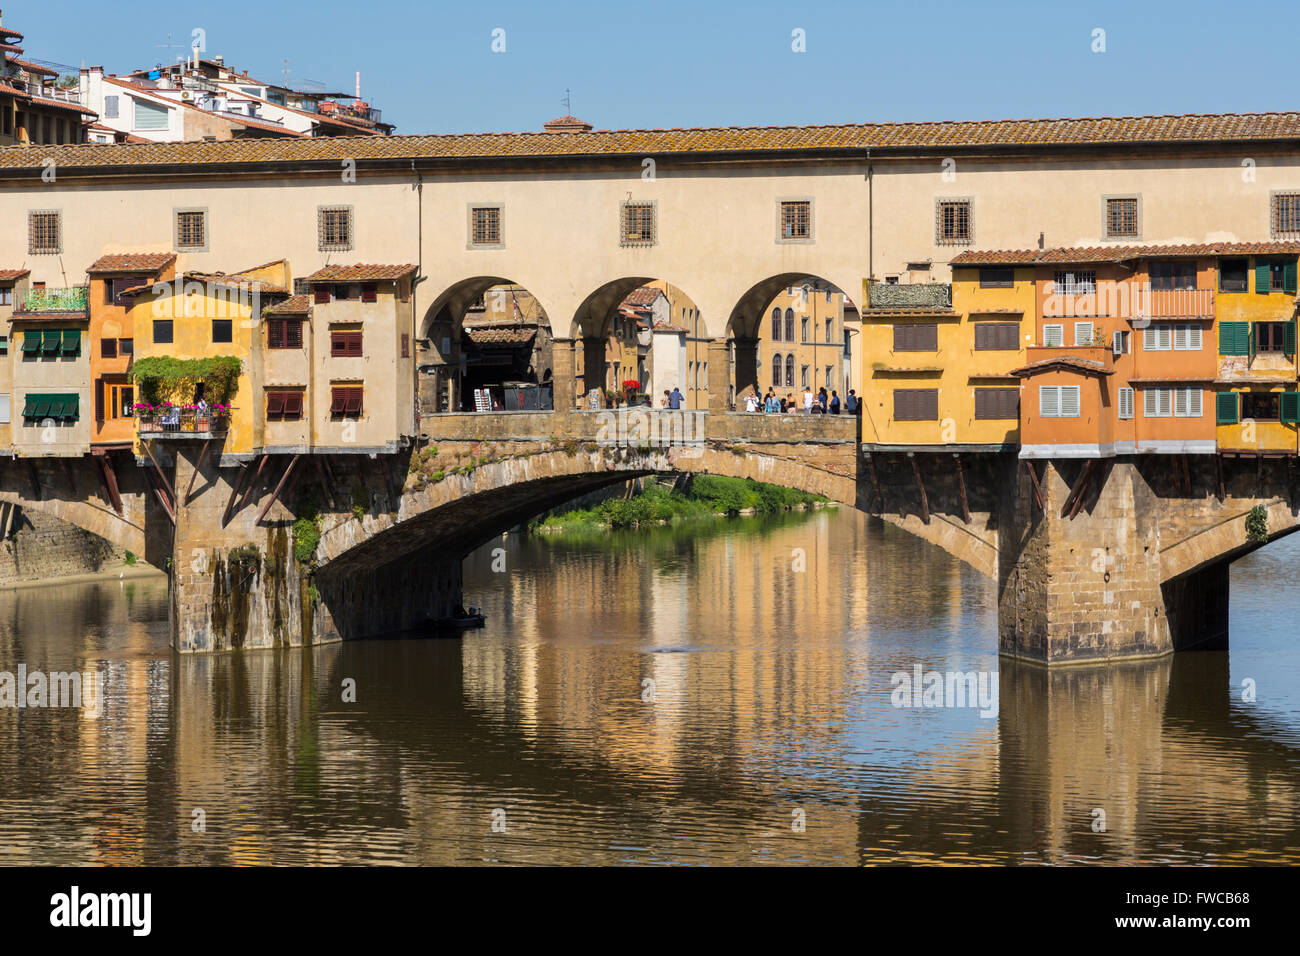 La province de Florence, Florence, Toscane, Italie. La ville médiévale de Ponte Vecchio, ou Vieux Pont, sur le fleuve Arno. Banque D'Images